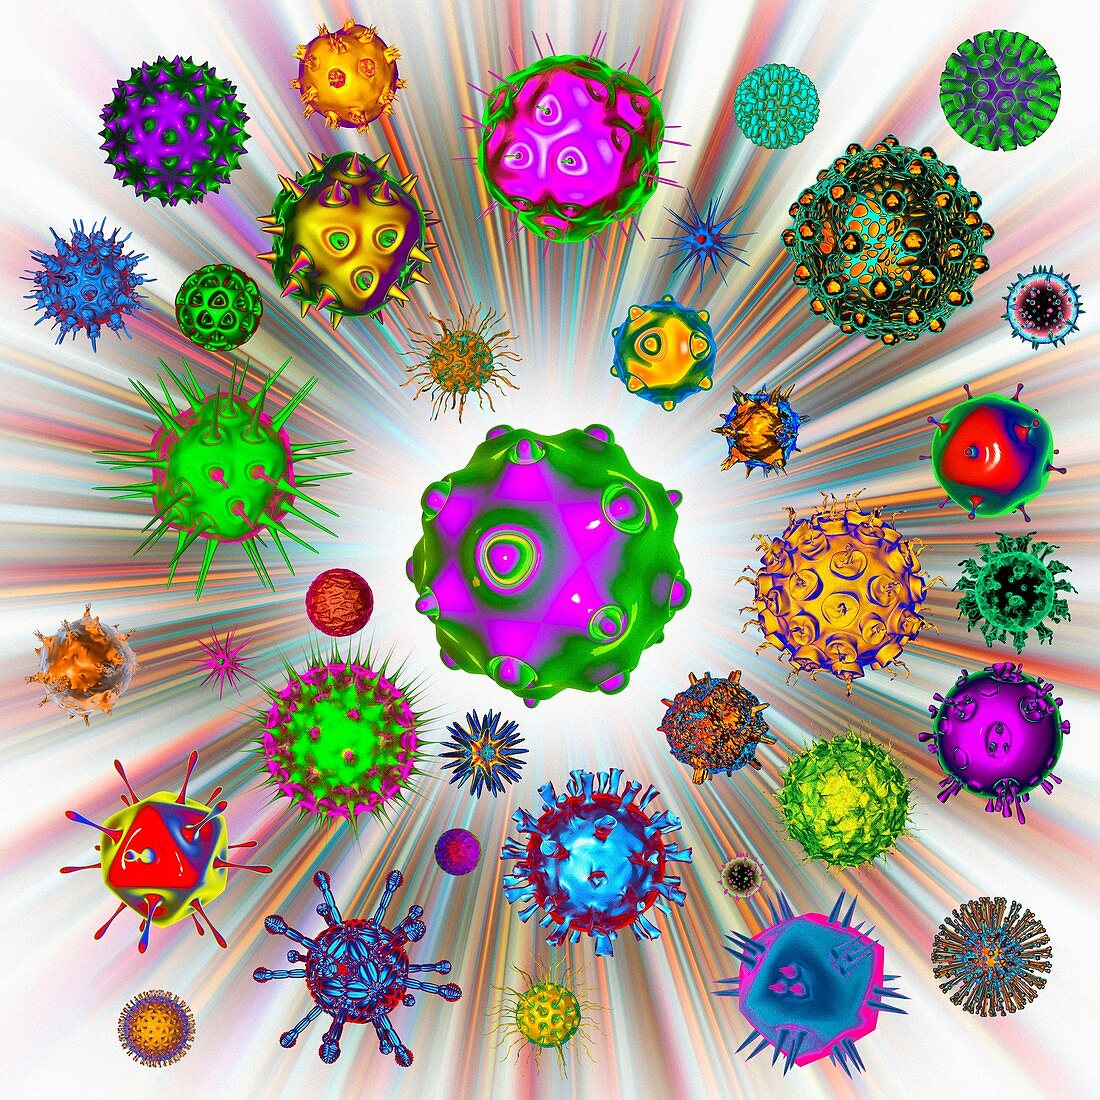 Virus,illustration